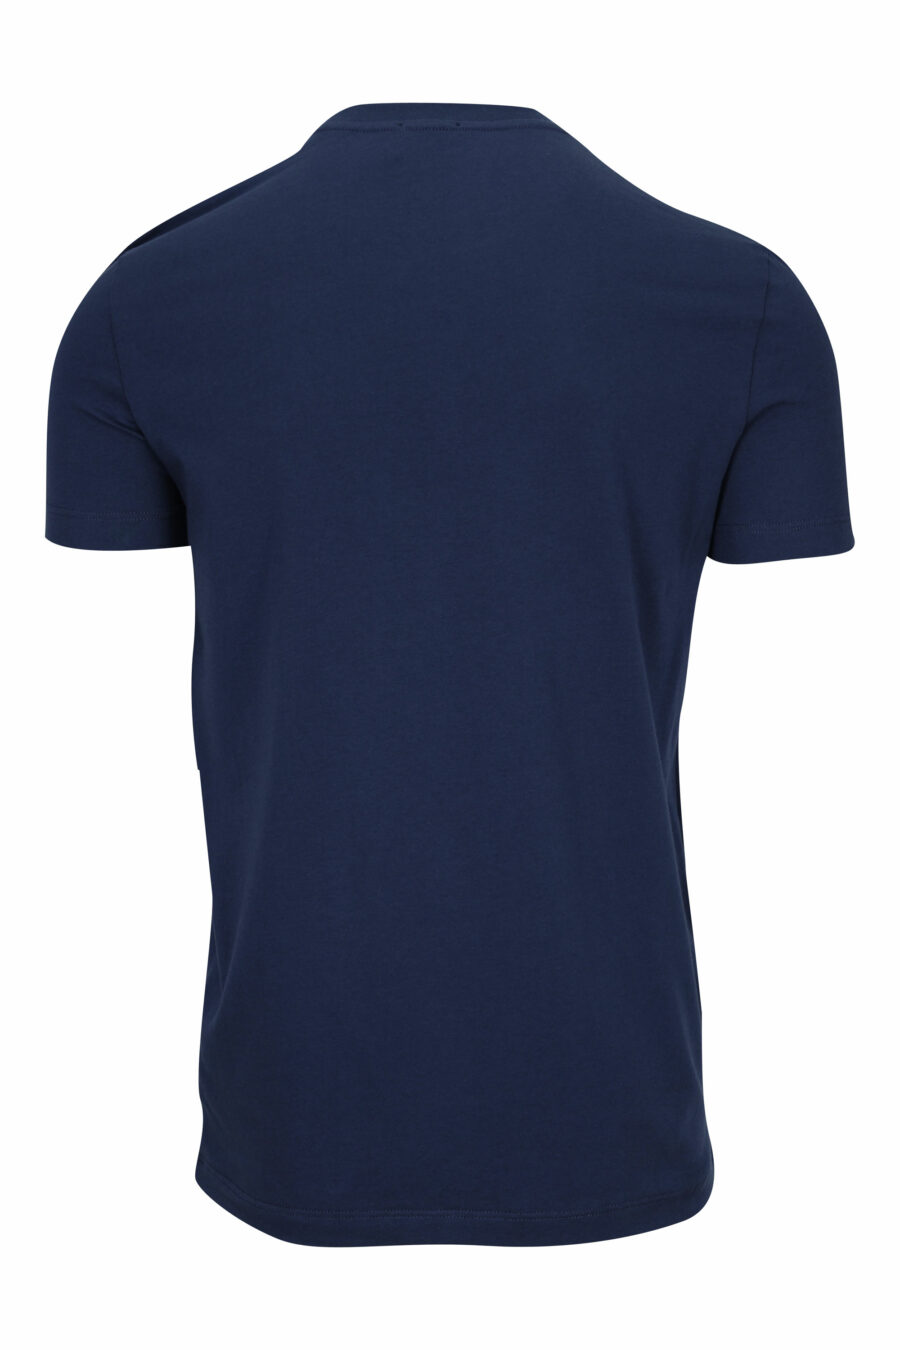 Camiseta azul oscuro con minilogo "underwear" blanco - 8032674811684 1